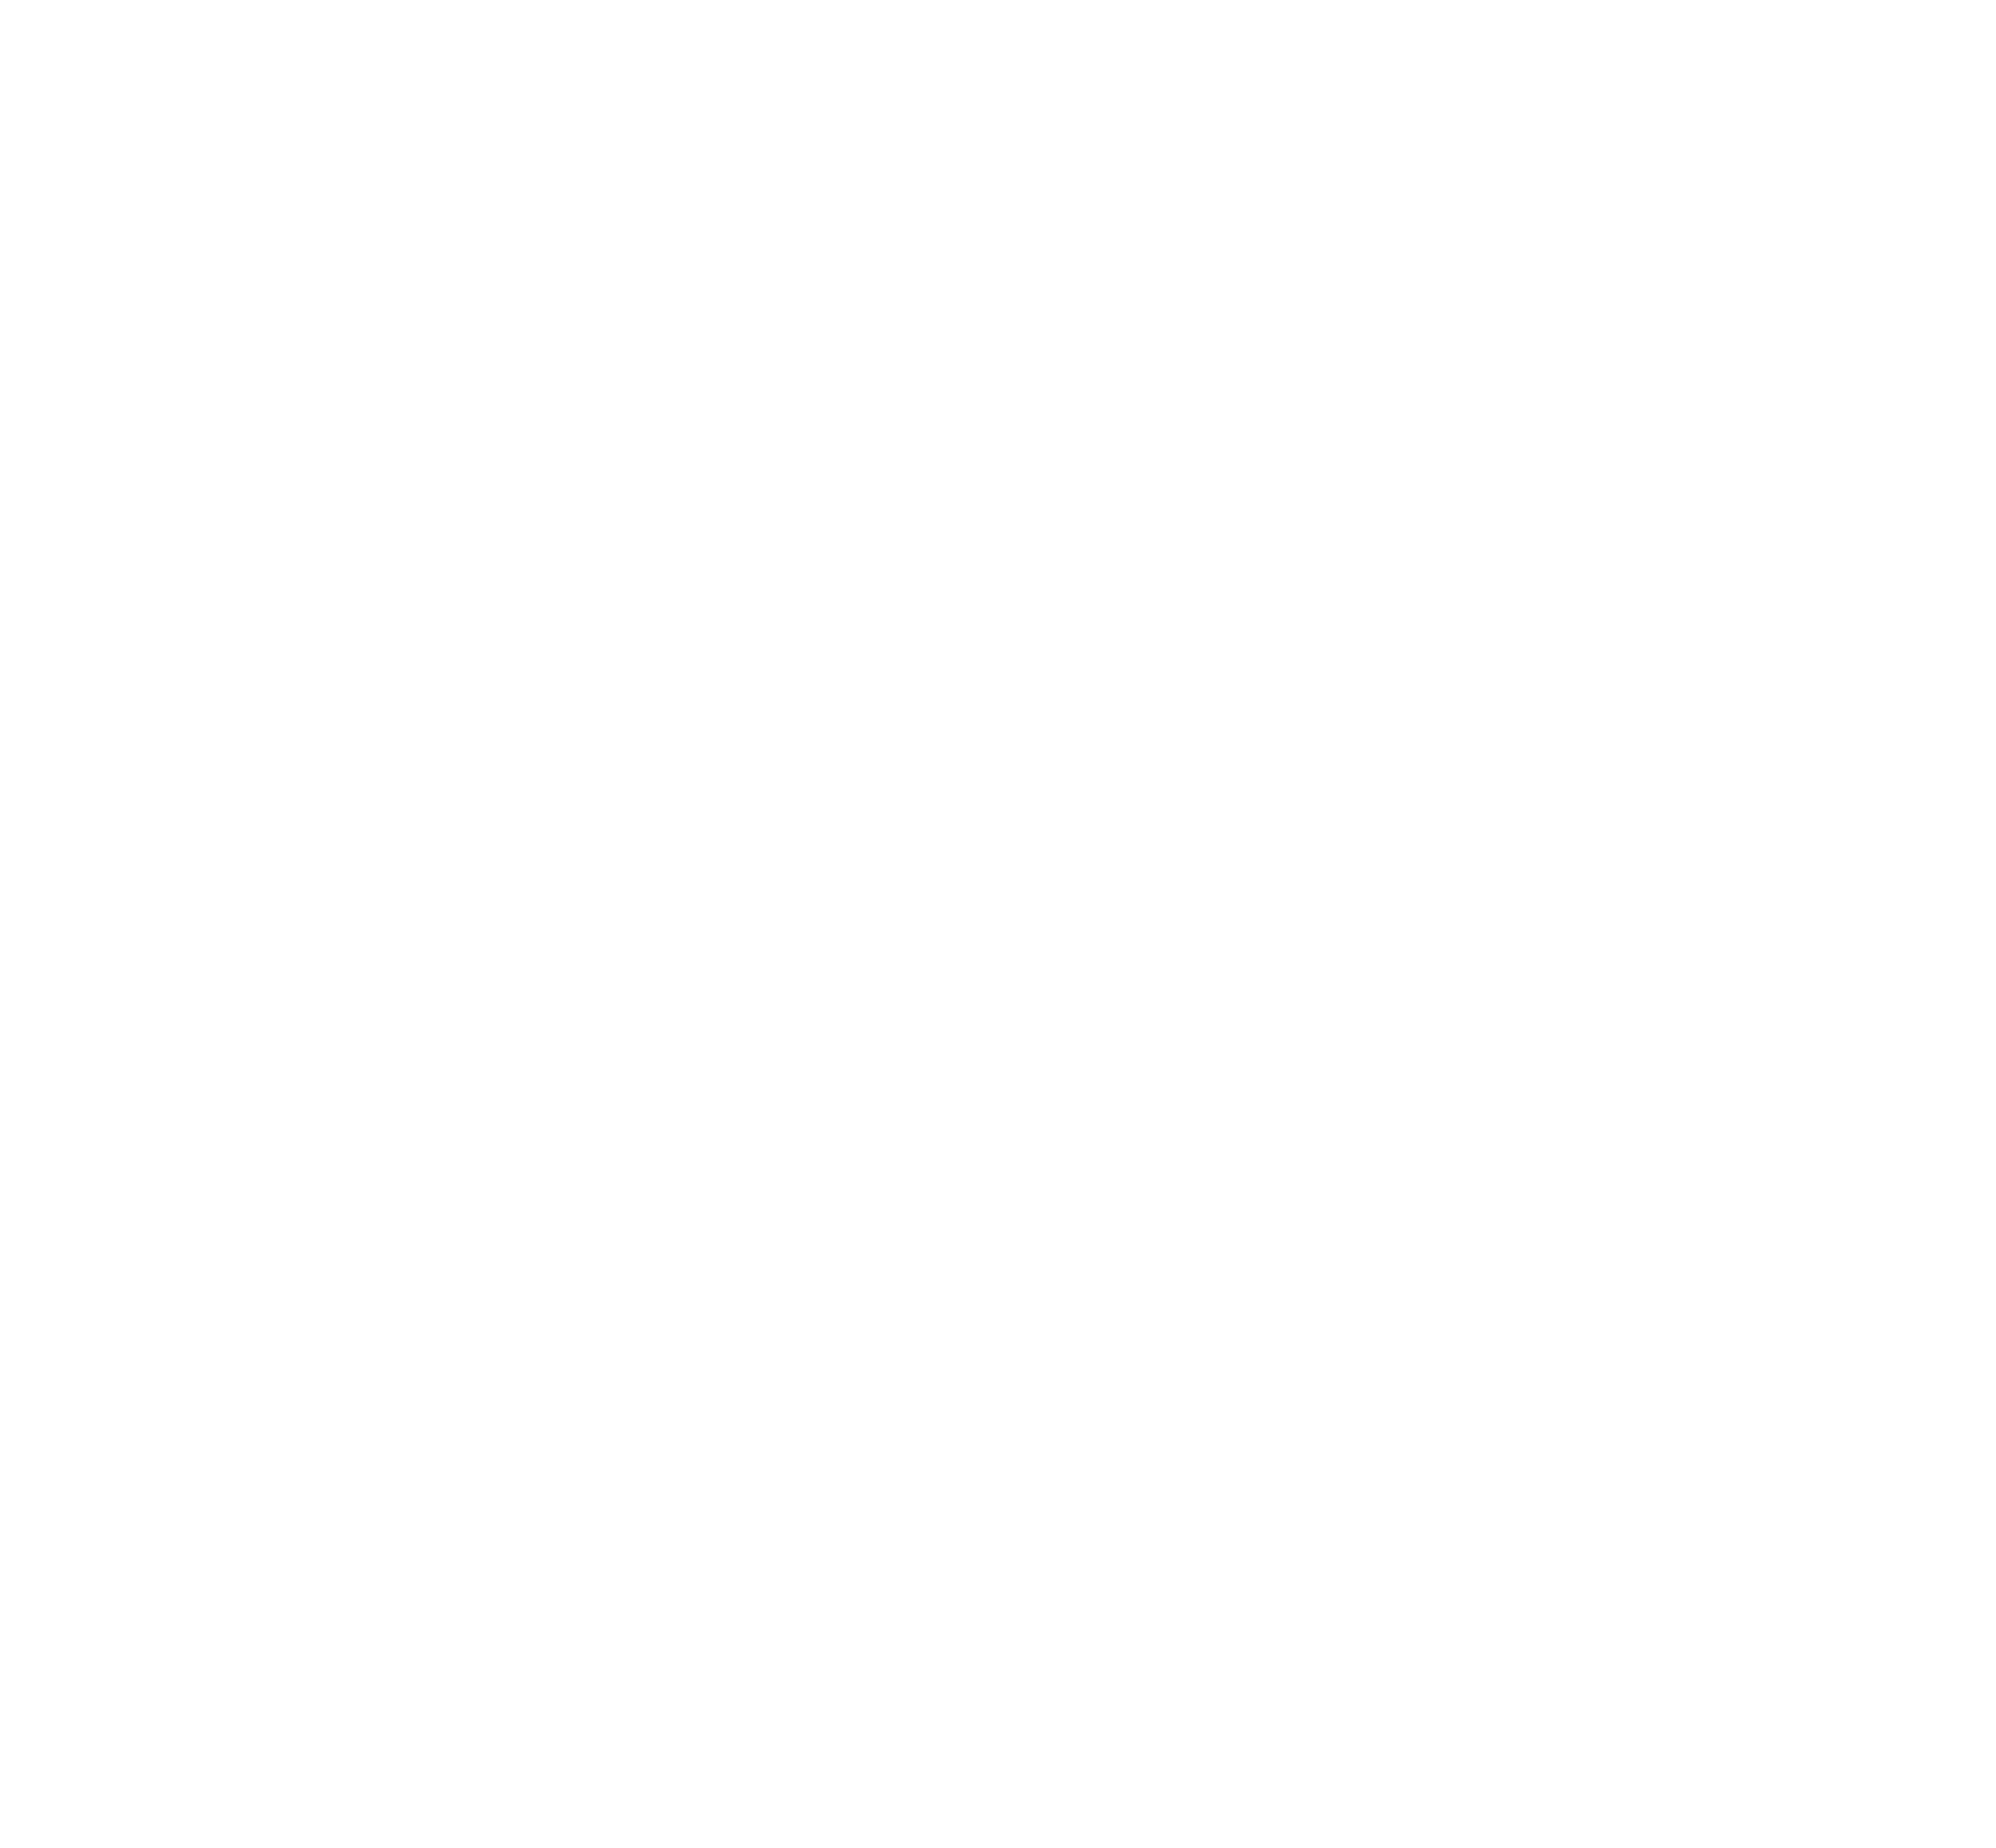 STT Saint Paul Bandung